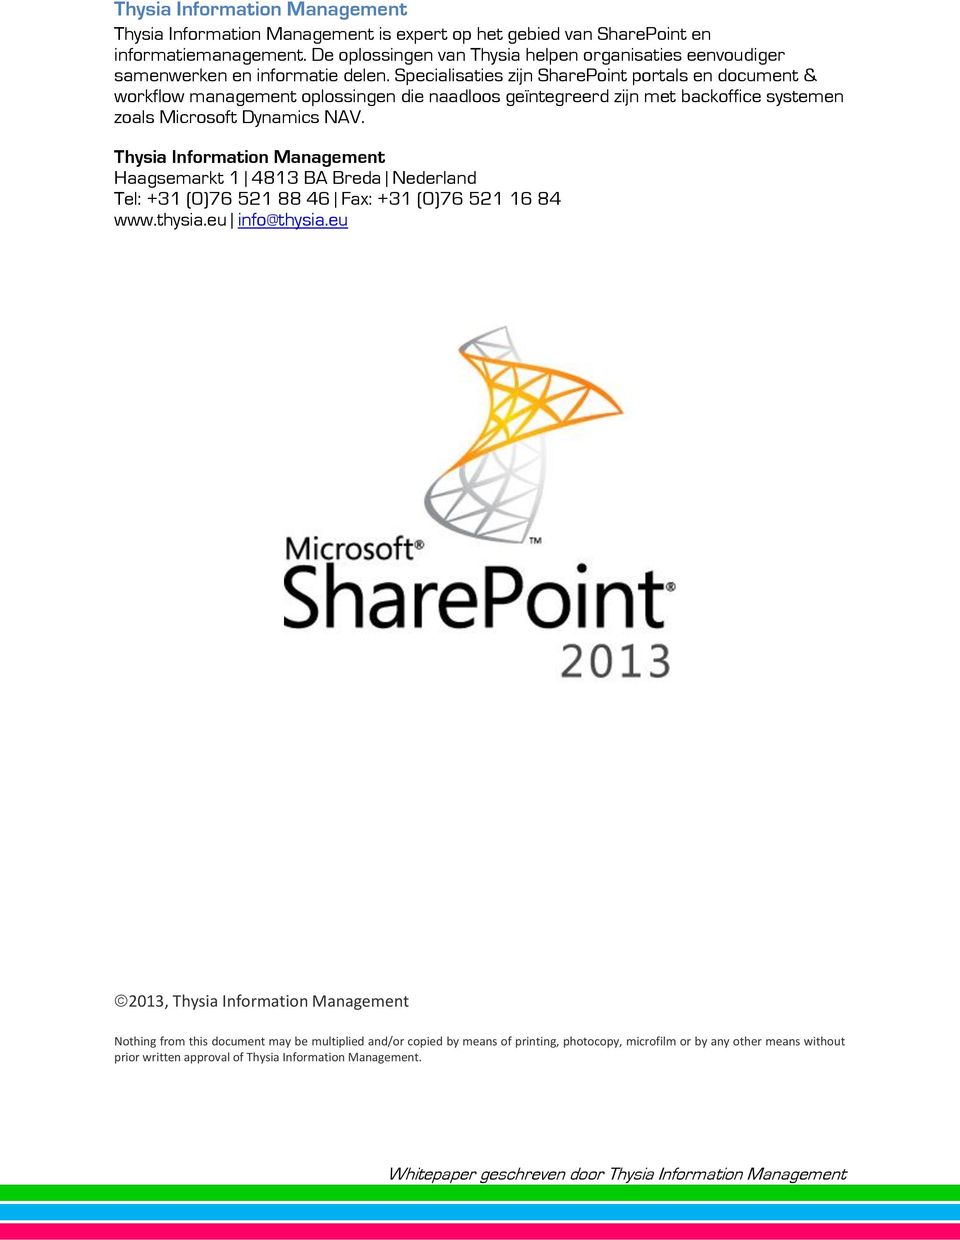 Specialisaties zijn SharePoint portals en document & workflow management oplossingen die naadloos geïntegreerd zijn met backoffice systemen zoals Microsoft Dynamics NAV.